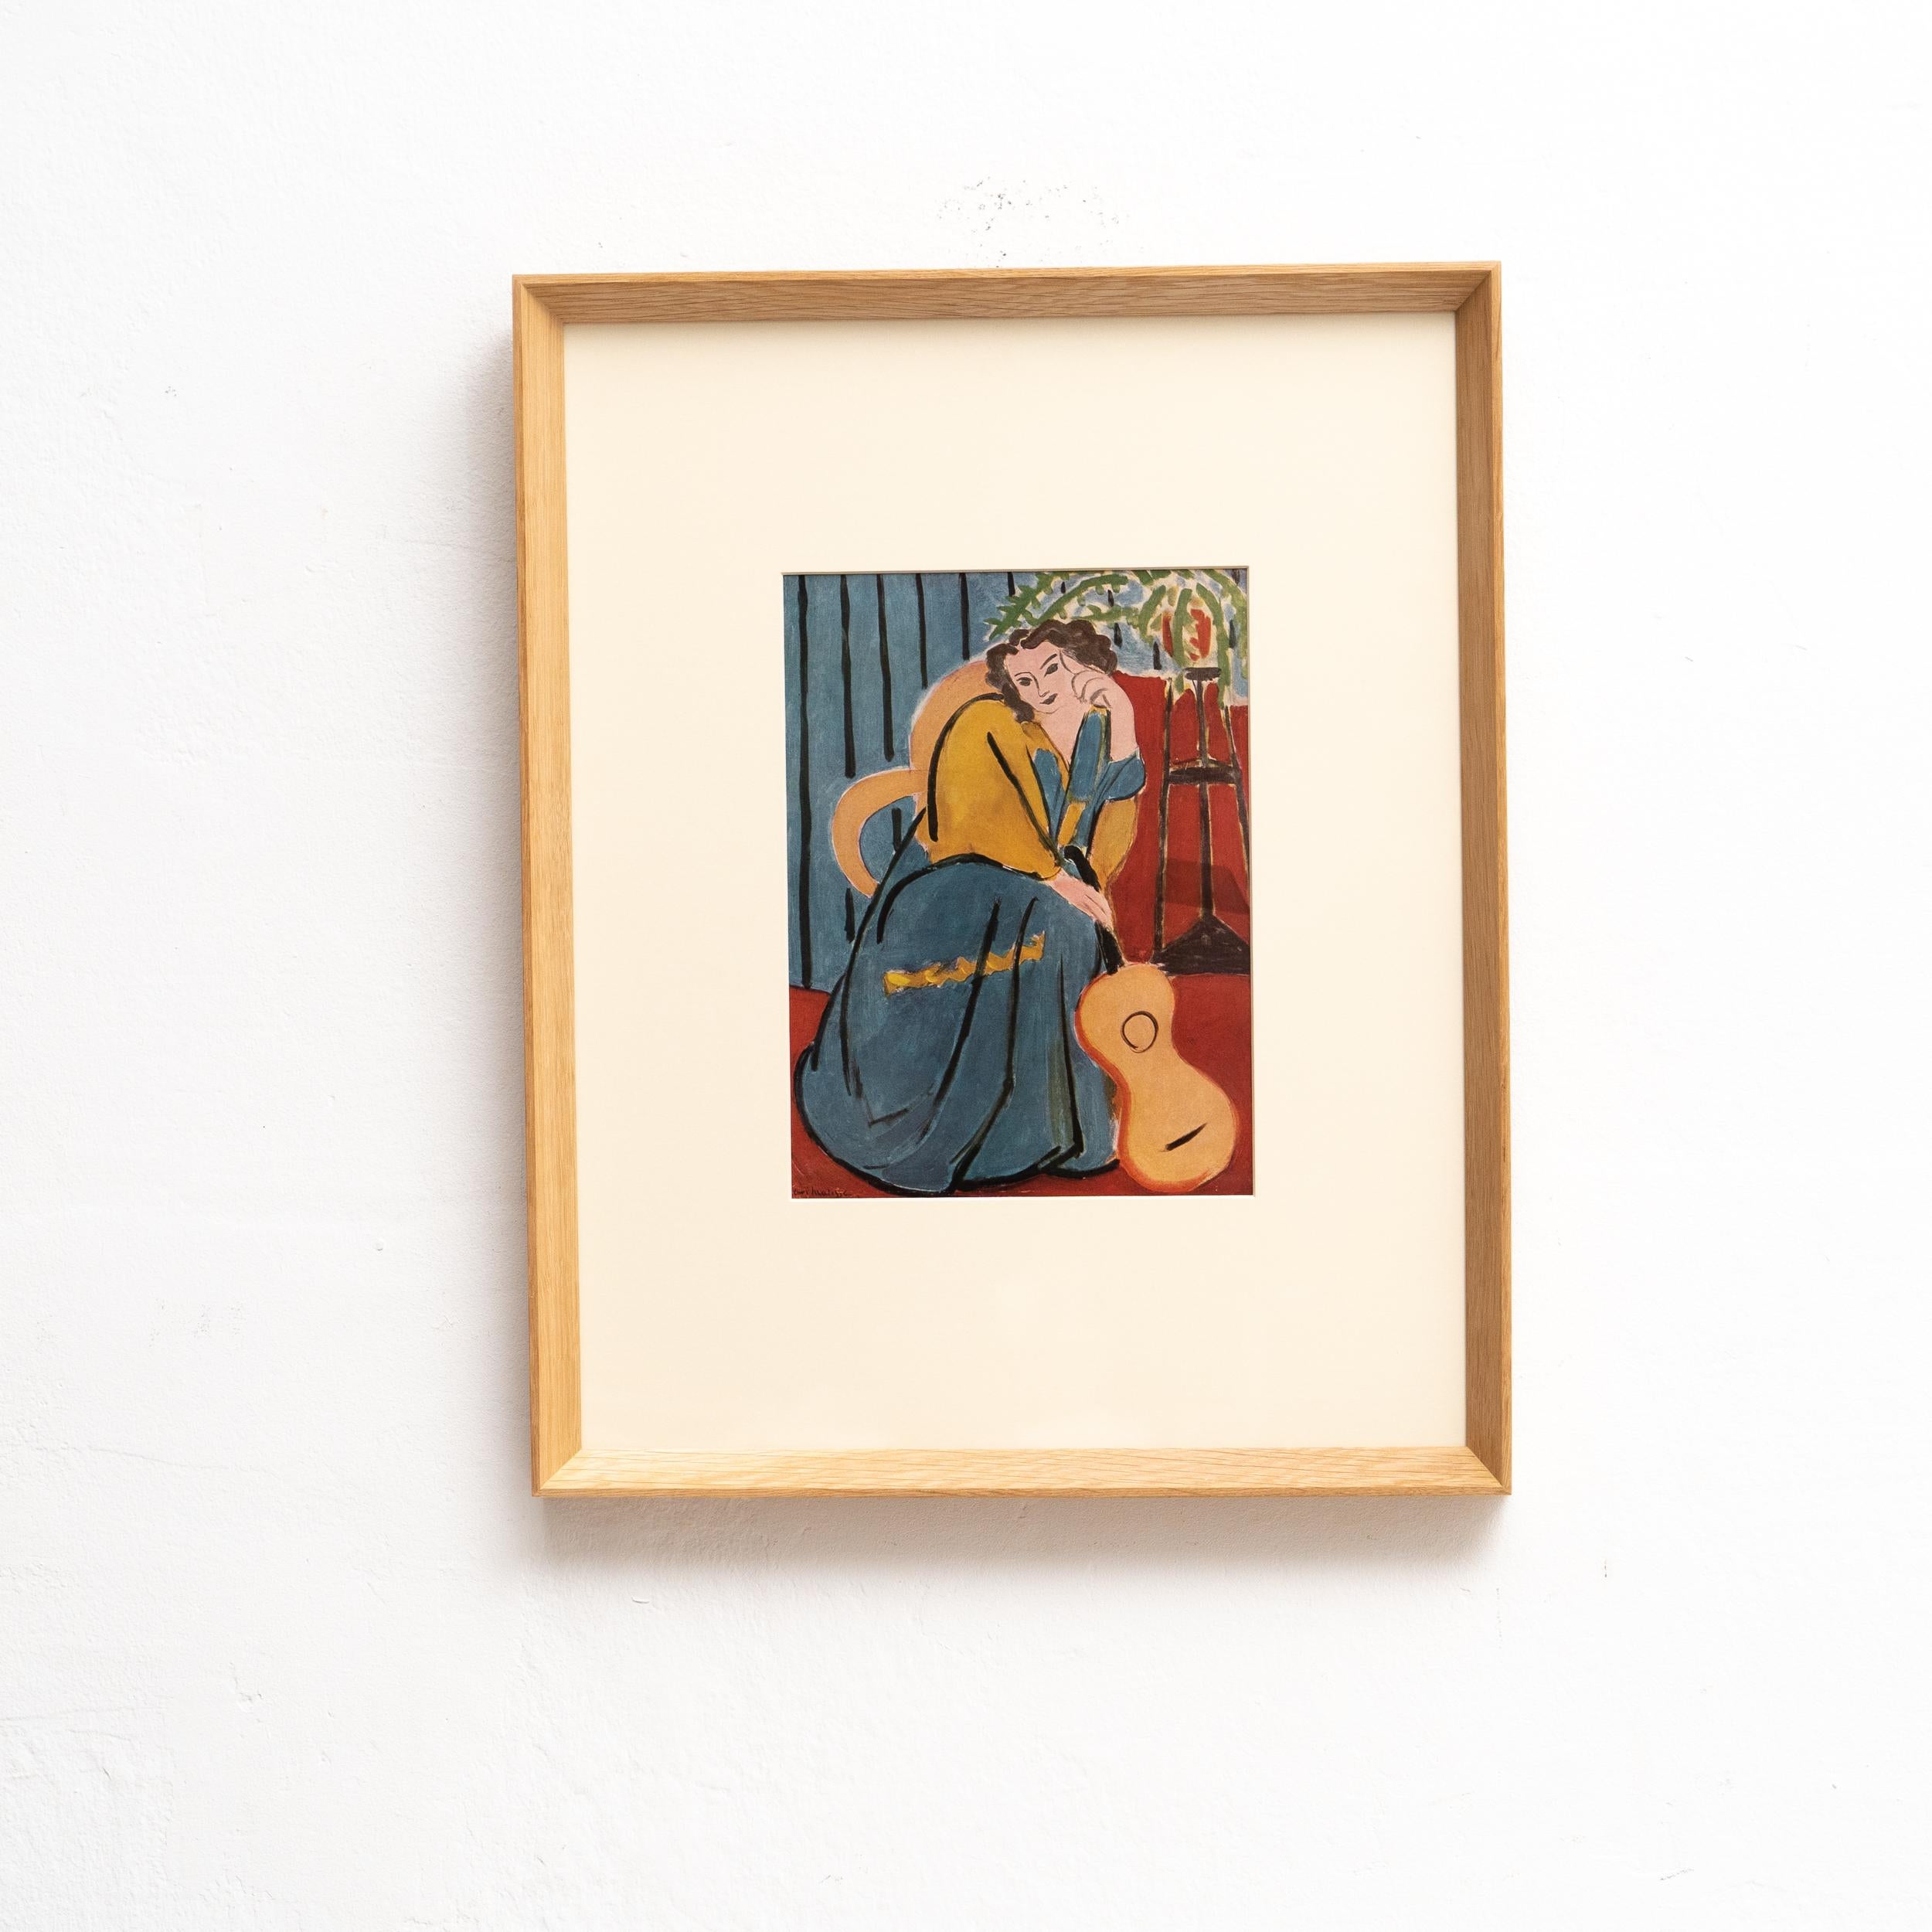 Genießen Sie die künstlerische Brillanz von Henri Matisse mit dieser seltenen Farblithografie, die 1943 von Editions du Chene in Paris, Frankreich, sorgfältig herausgegeben wurde. Das in einem beeindruckenden Massivholzrahmen gerahmte Kunstwerk